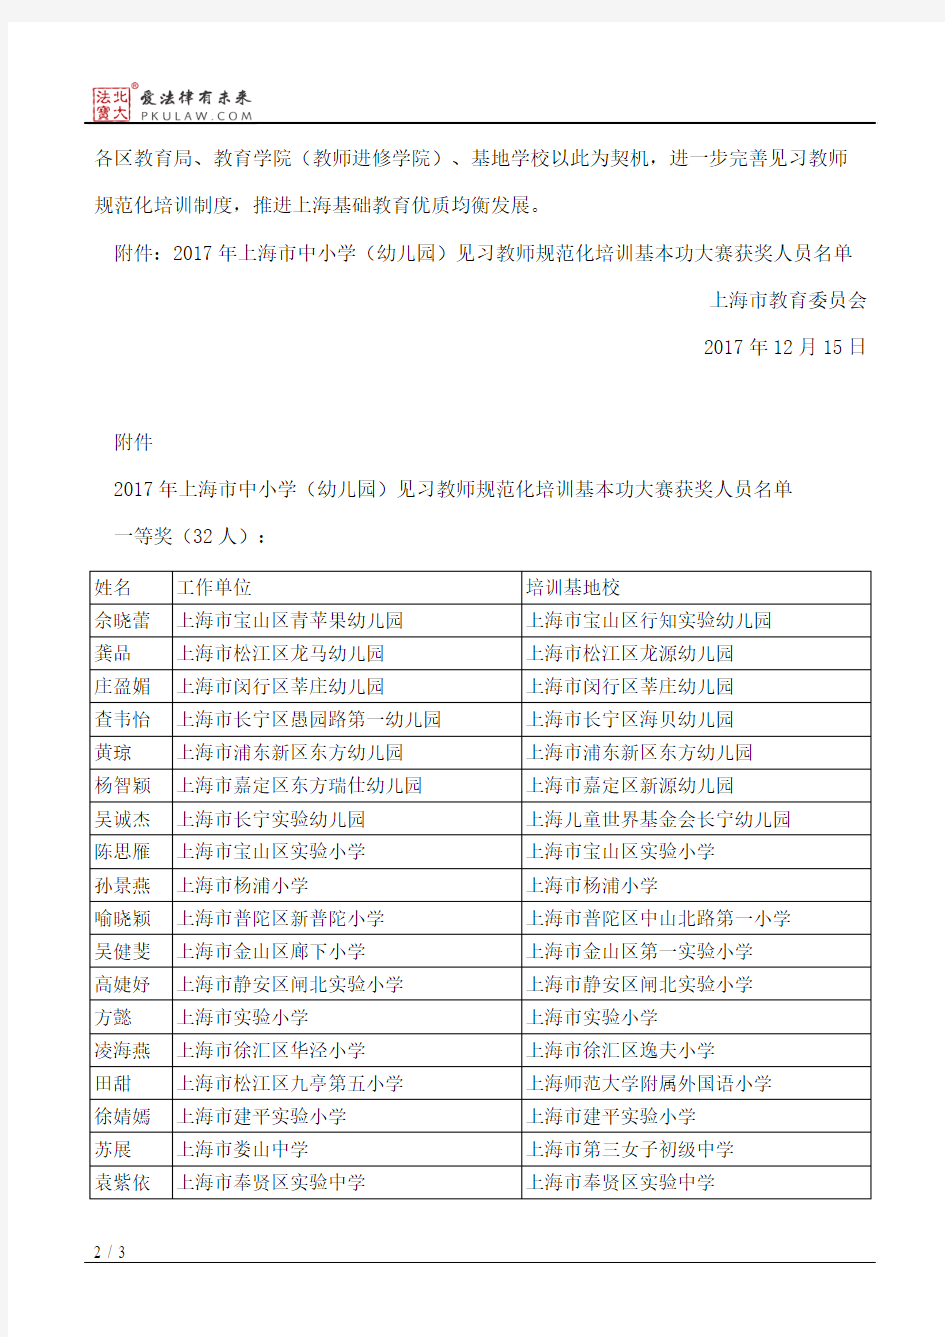 上海市教育委员会关于公布2017年上海市中小学(幼儿园)见习教师规范